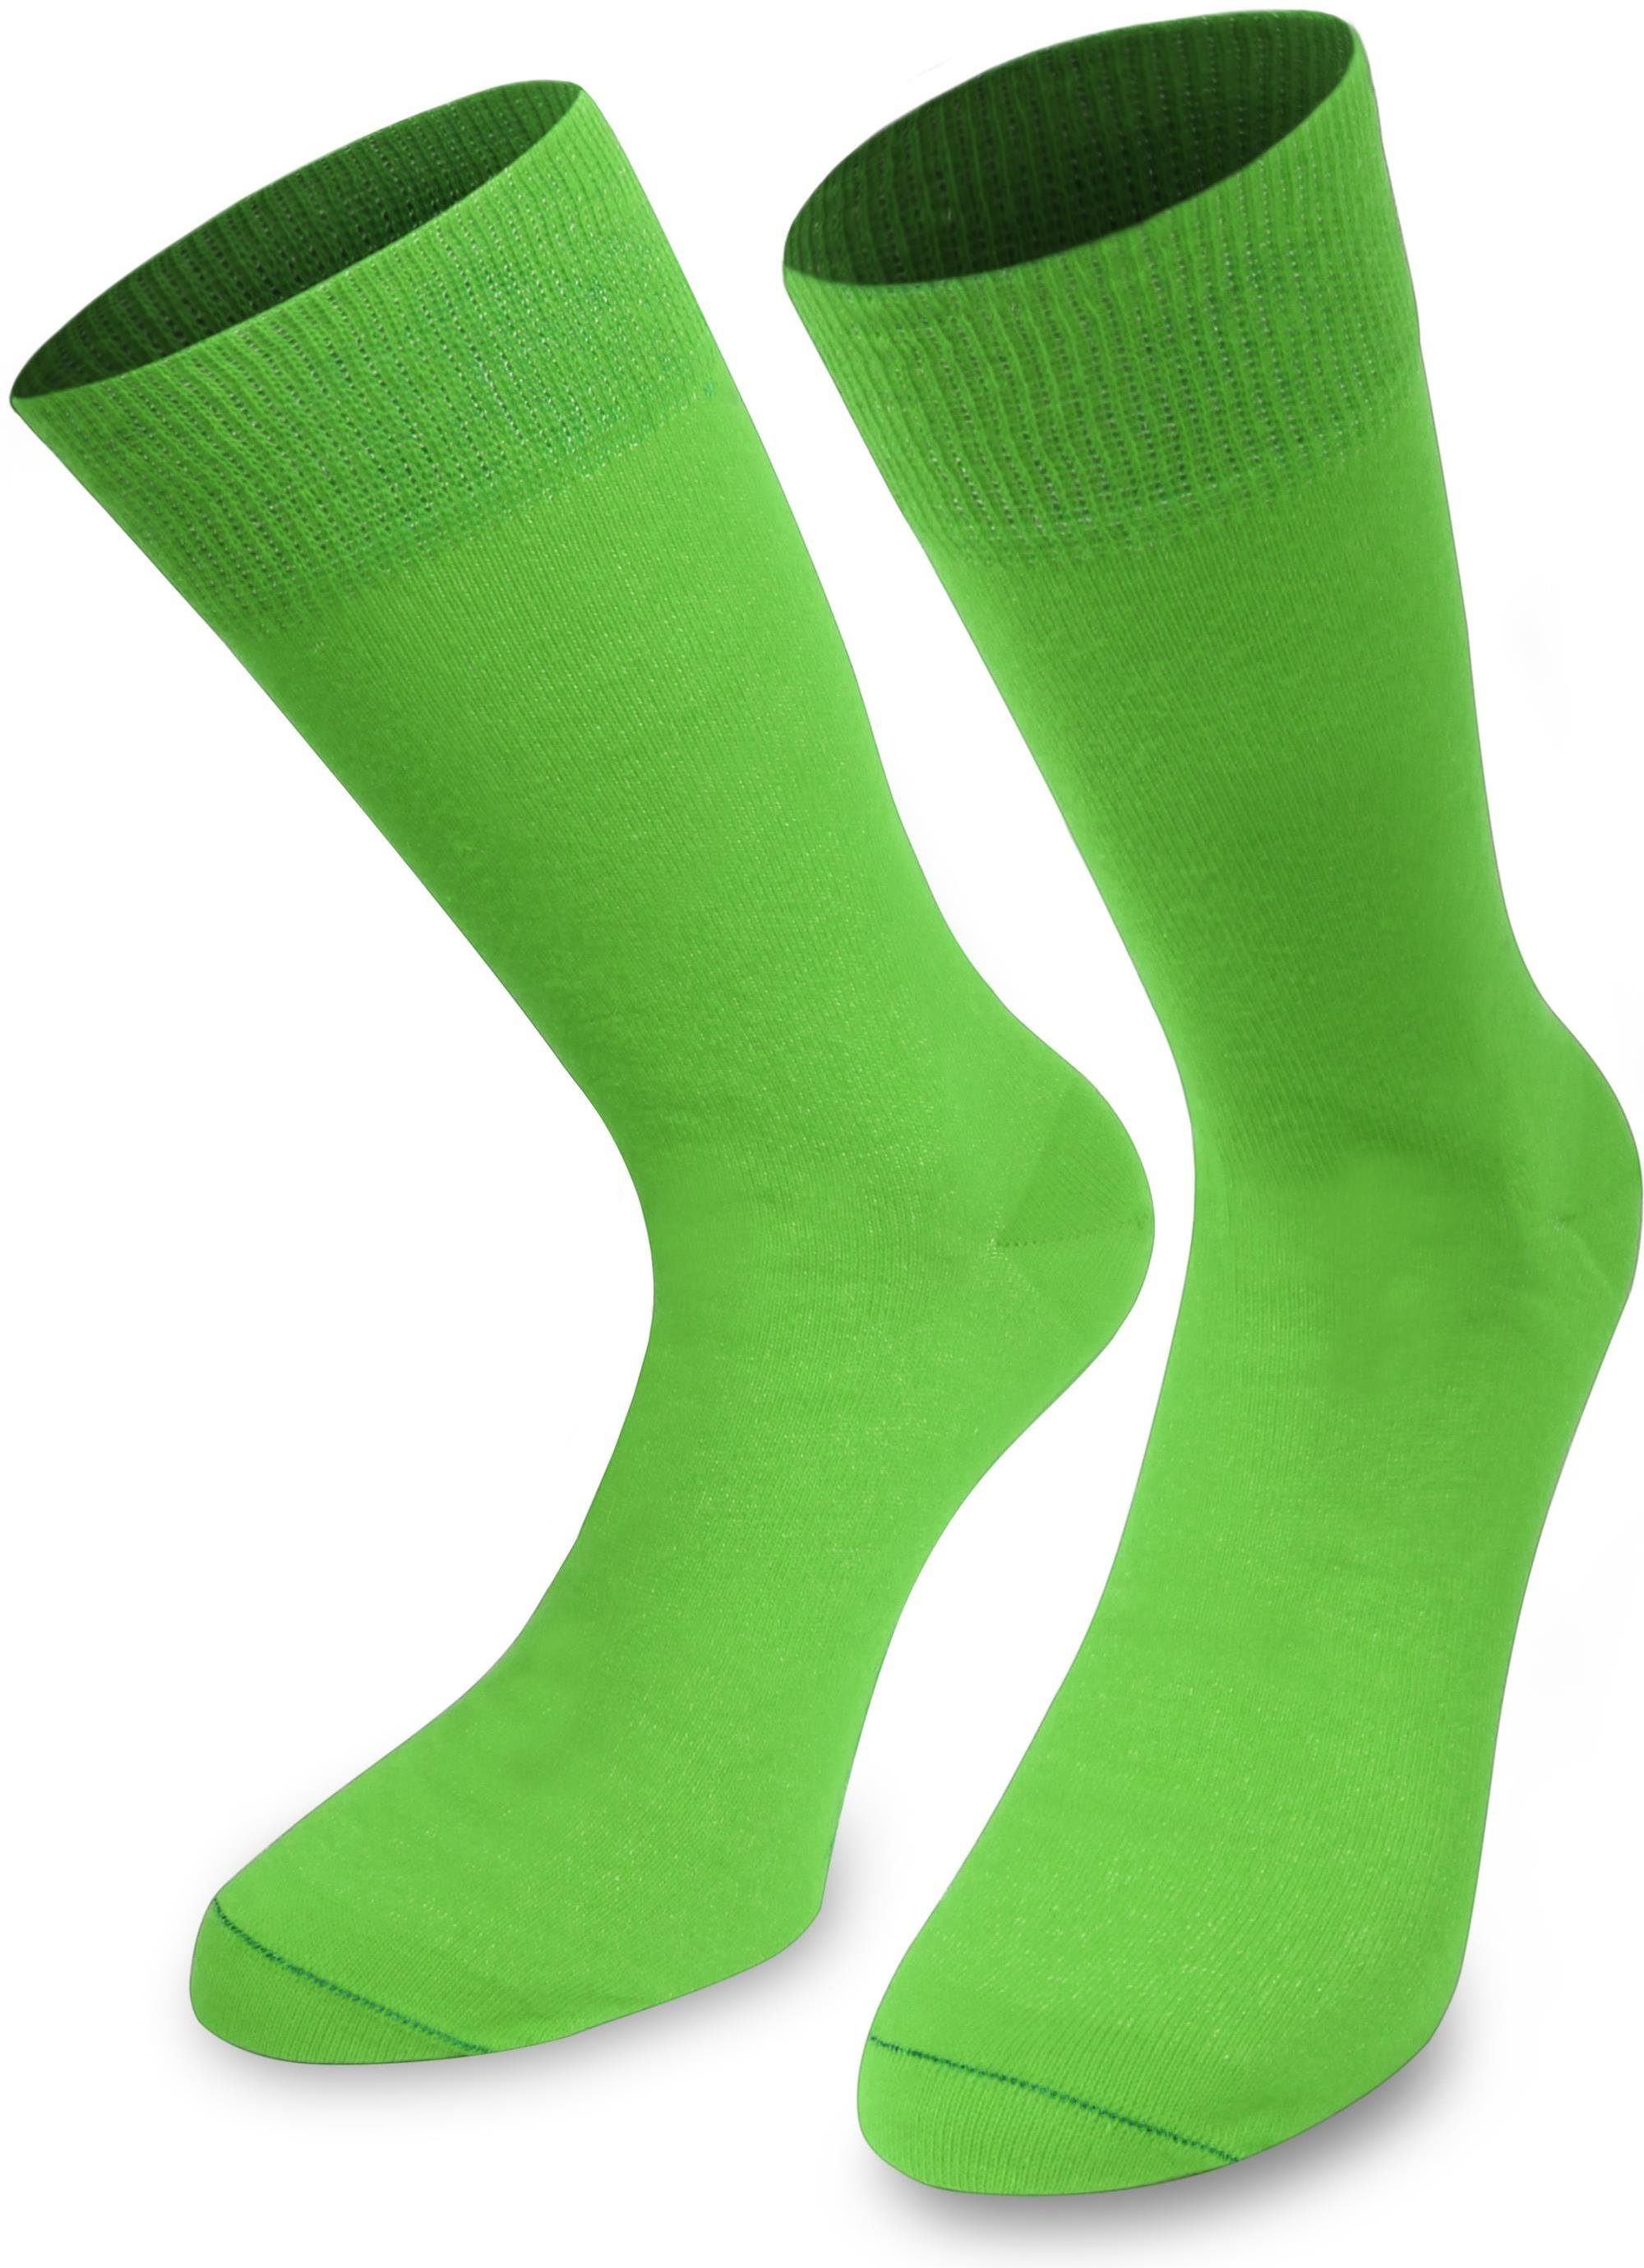 Grüne Socken online kaufen | OTTO